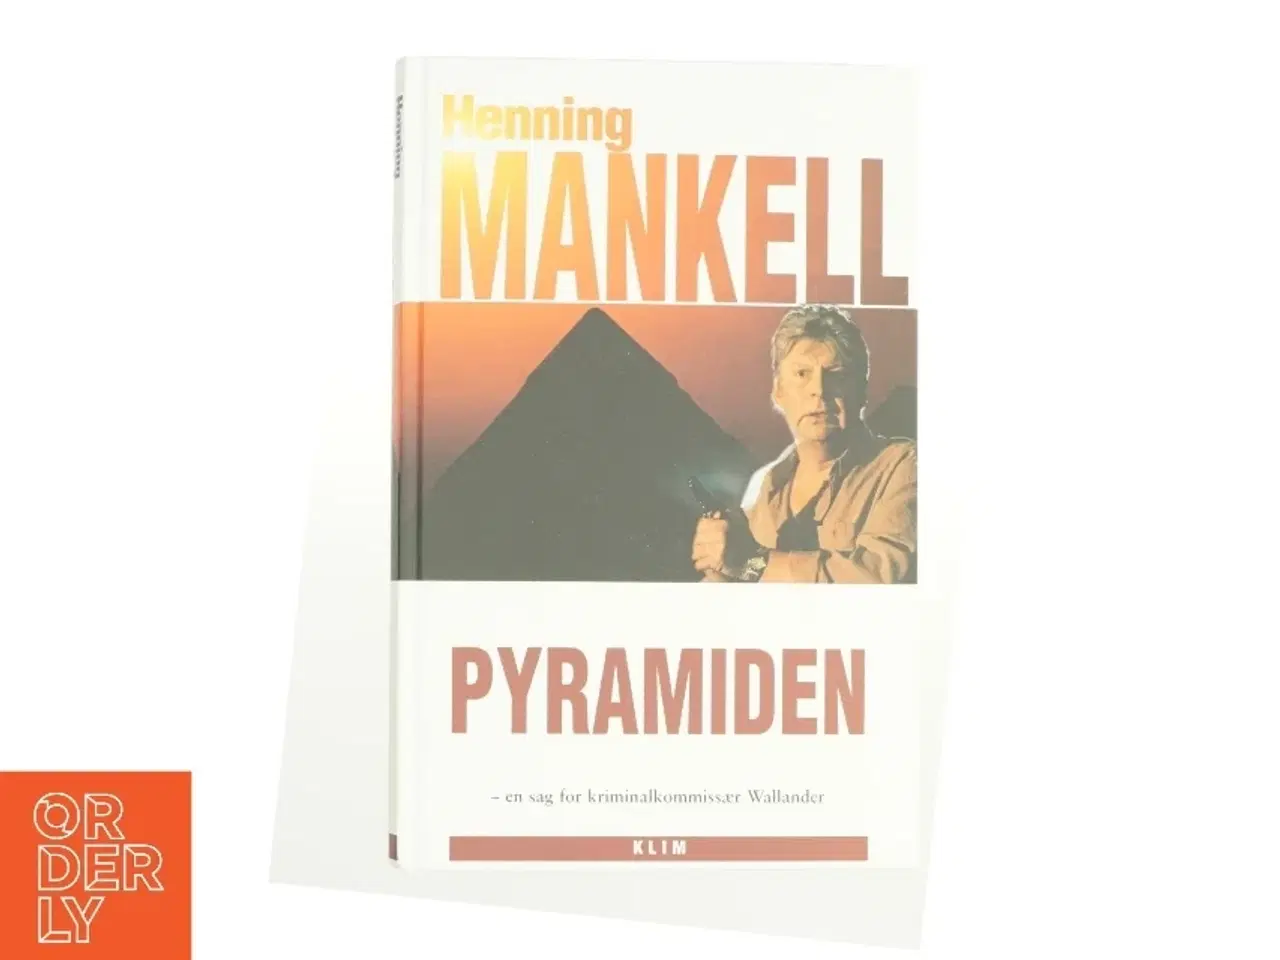 Billede 1 - Pyramiden af Henning Mankell